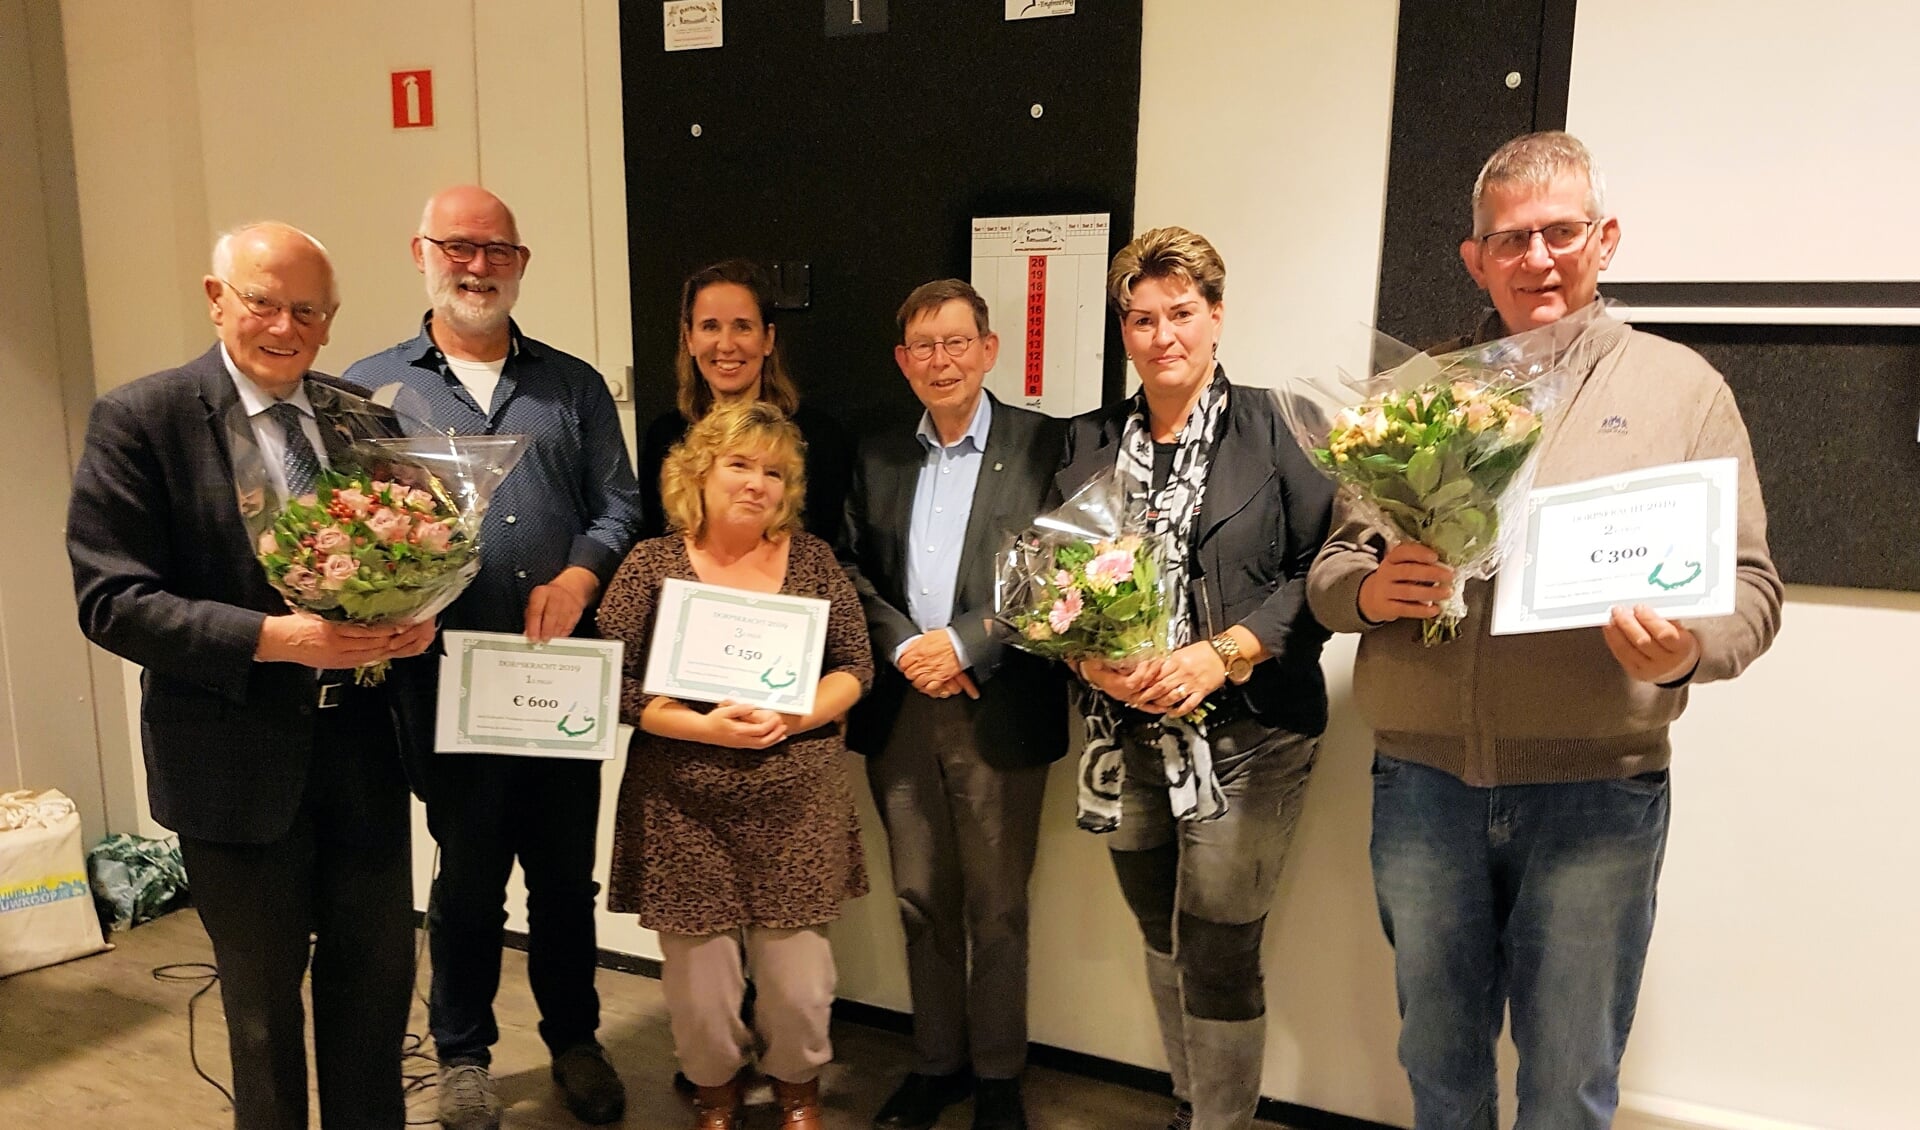 De prijswinnaars uit Nieuw Lekkerland, Stellendam en Ooltgensplaat met daarachter de juryleden Marianne Verhoev en Gert Jan Jansen.